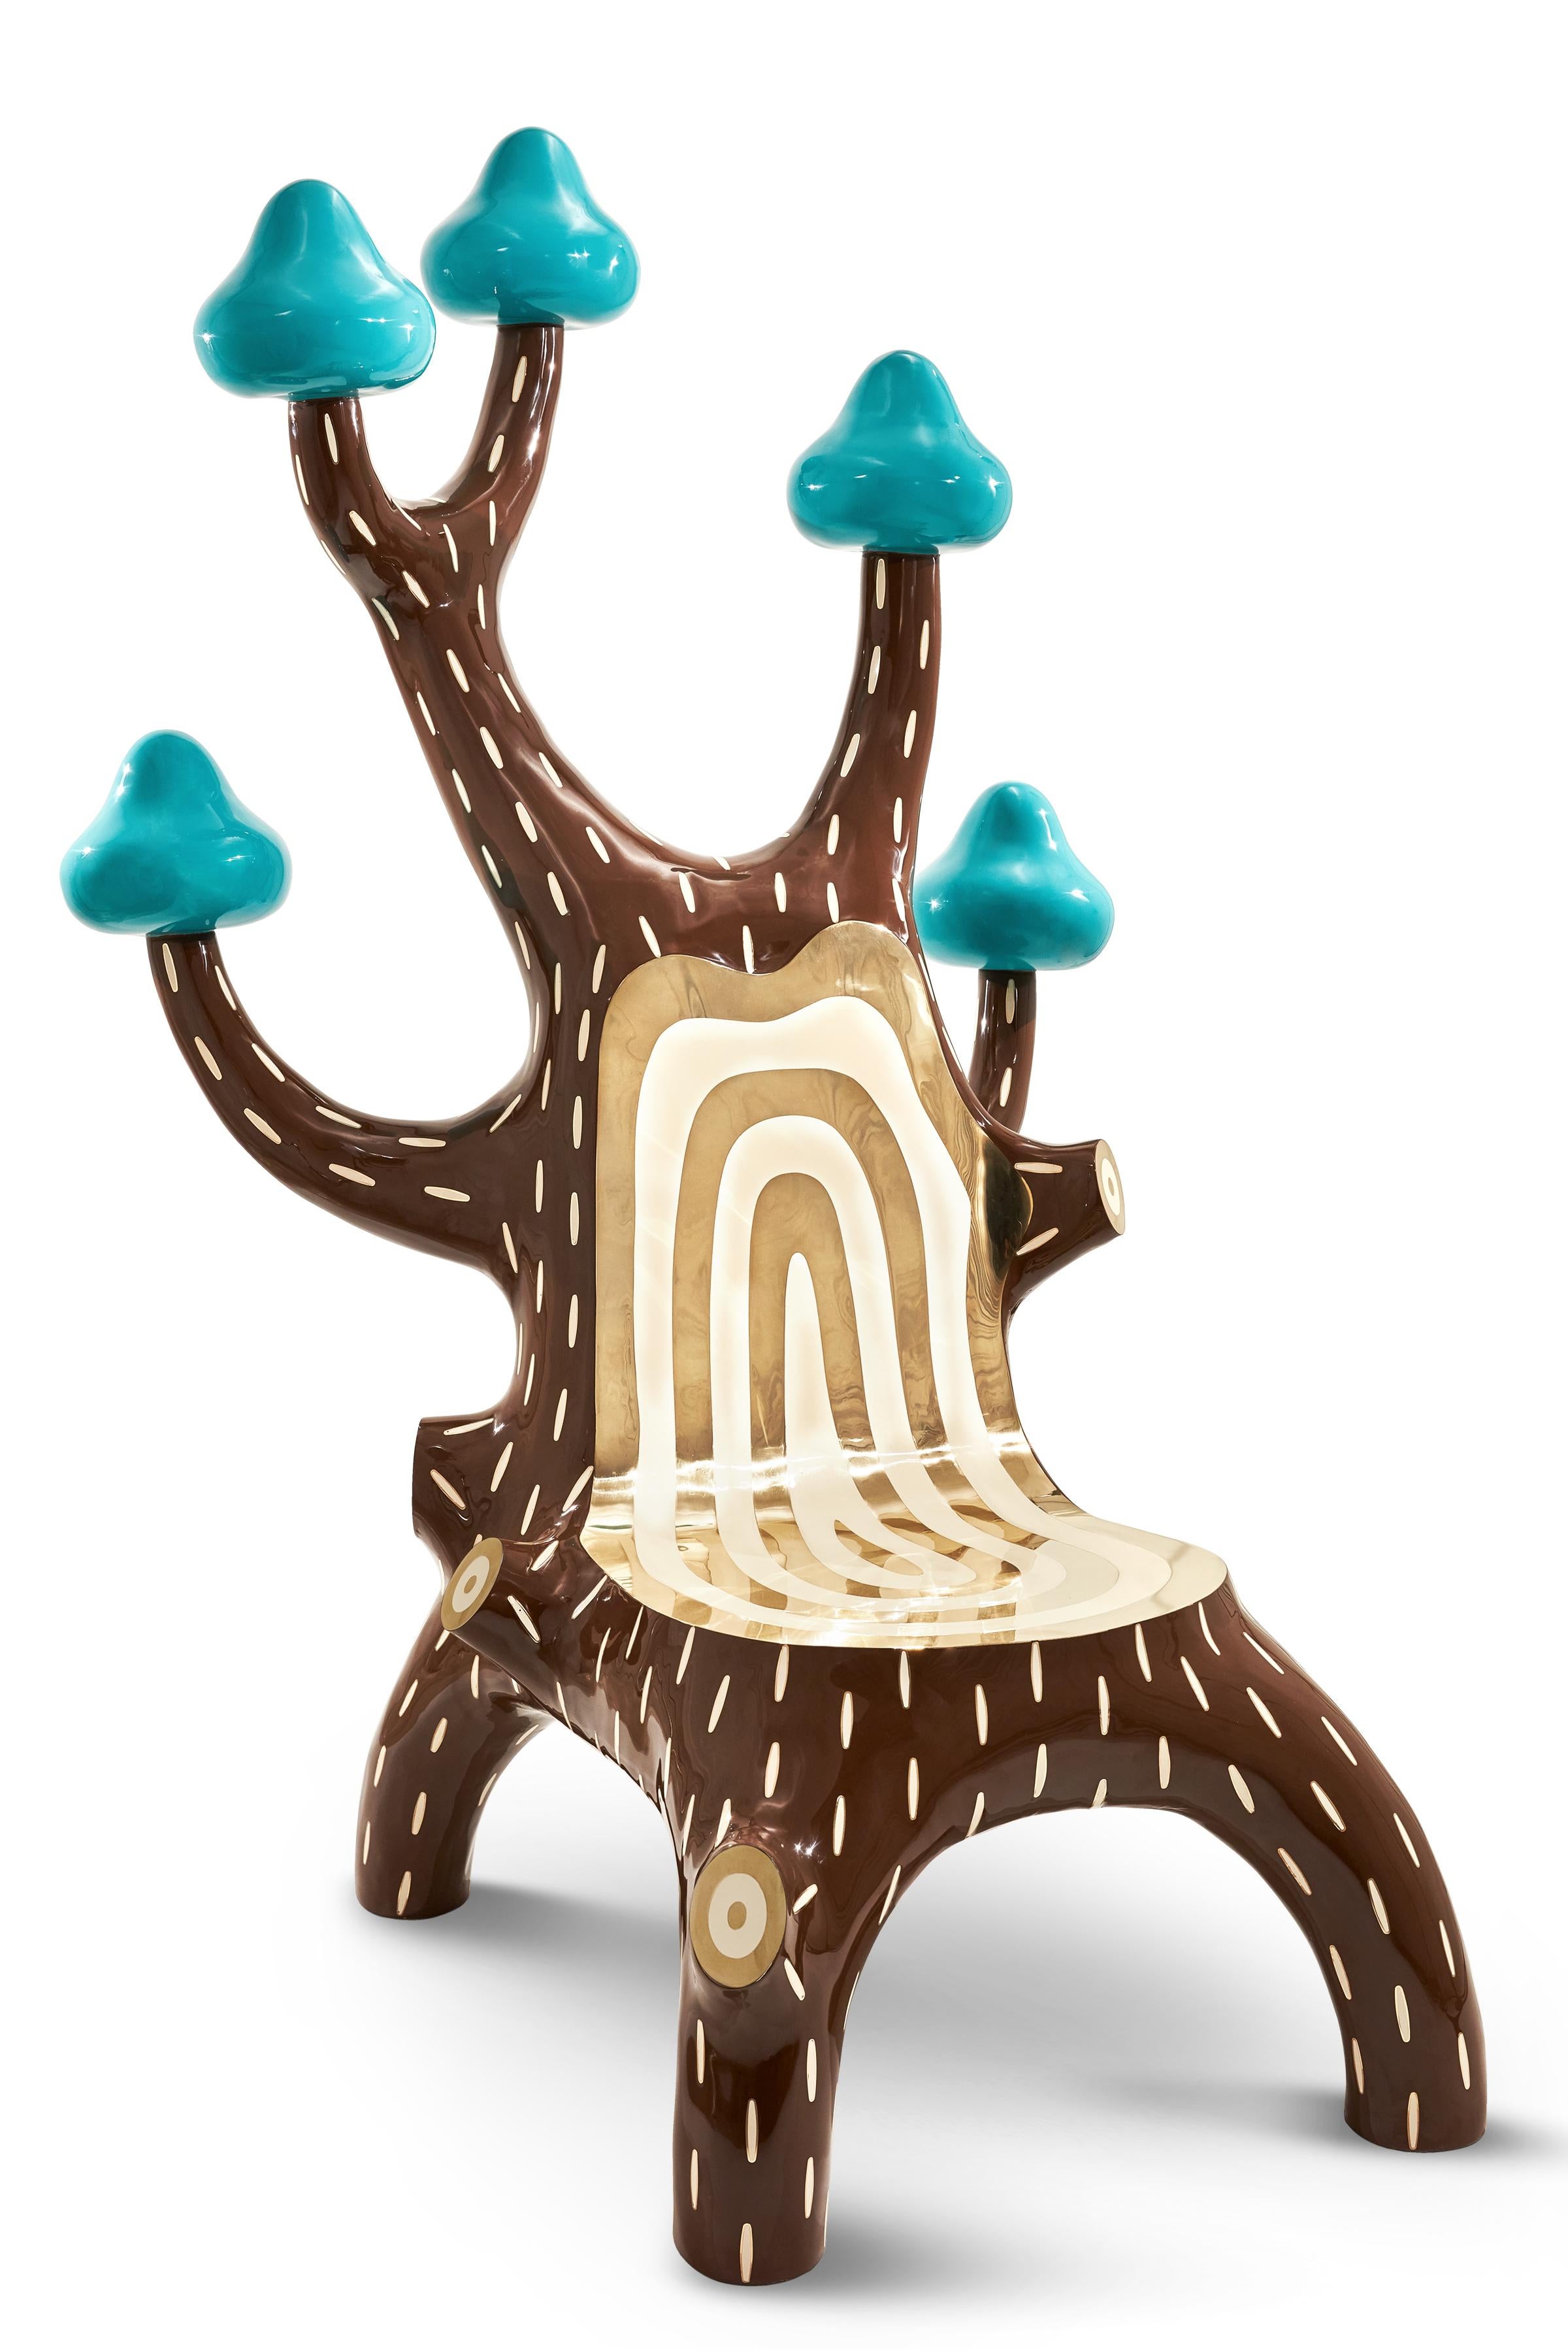 La chaise longue Forest avec incrustation en laiton de Marcantonio est une chaise luxueuse et pop, un sujet de conversation dans n'importe quel espace. Il est recouvert de 